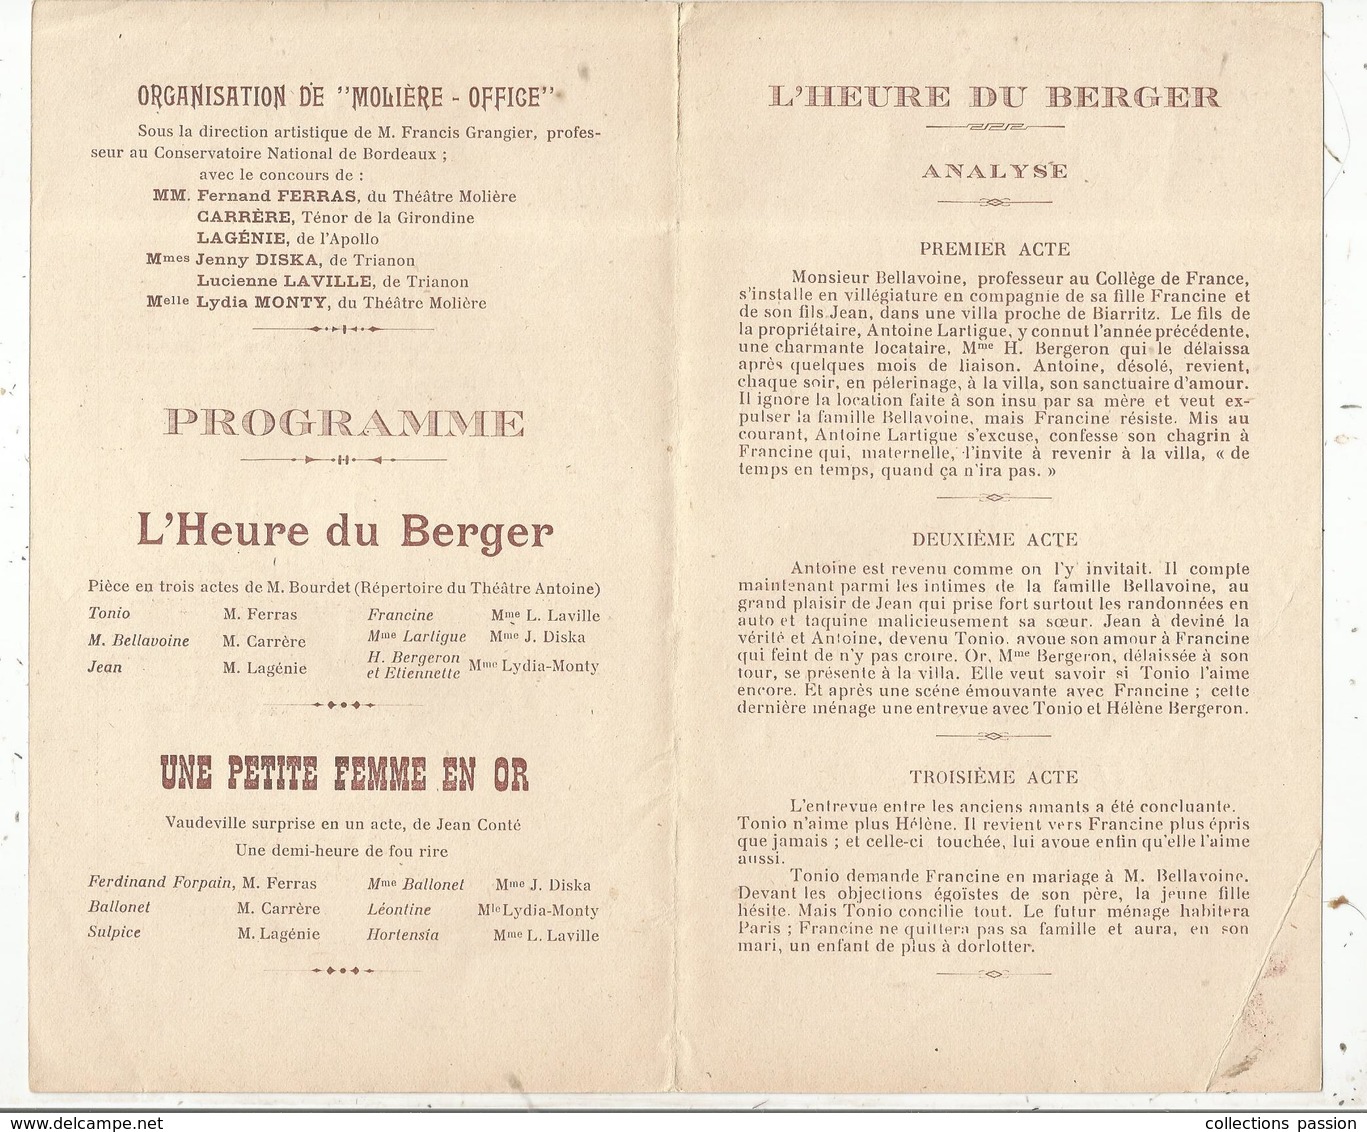 Programme, Ville De NANCRAS,17, Comité Des Anciens Combattants ,soirée De Gala, 1928,  , 2 Scans ,frais Fr 1.55 E - Programma's